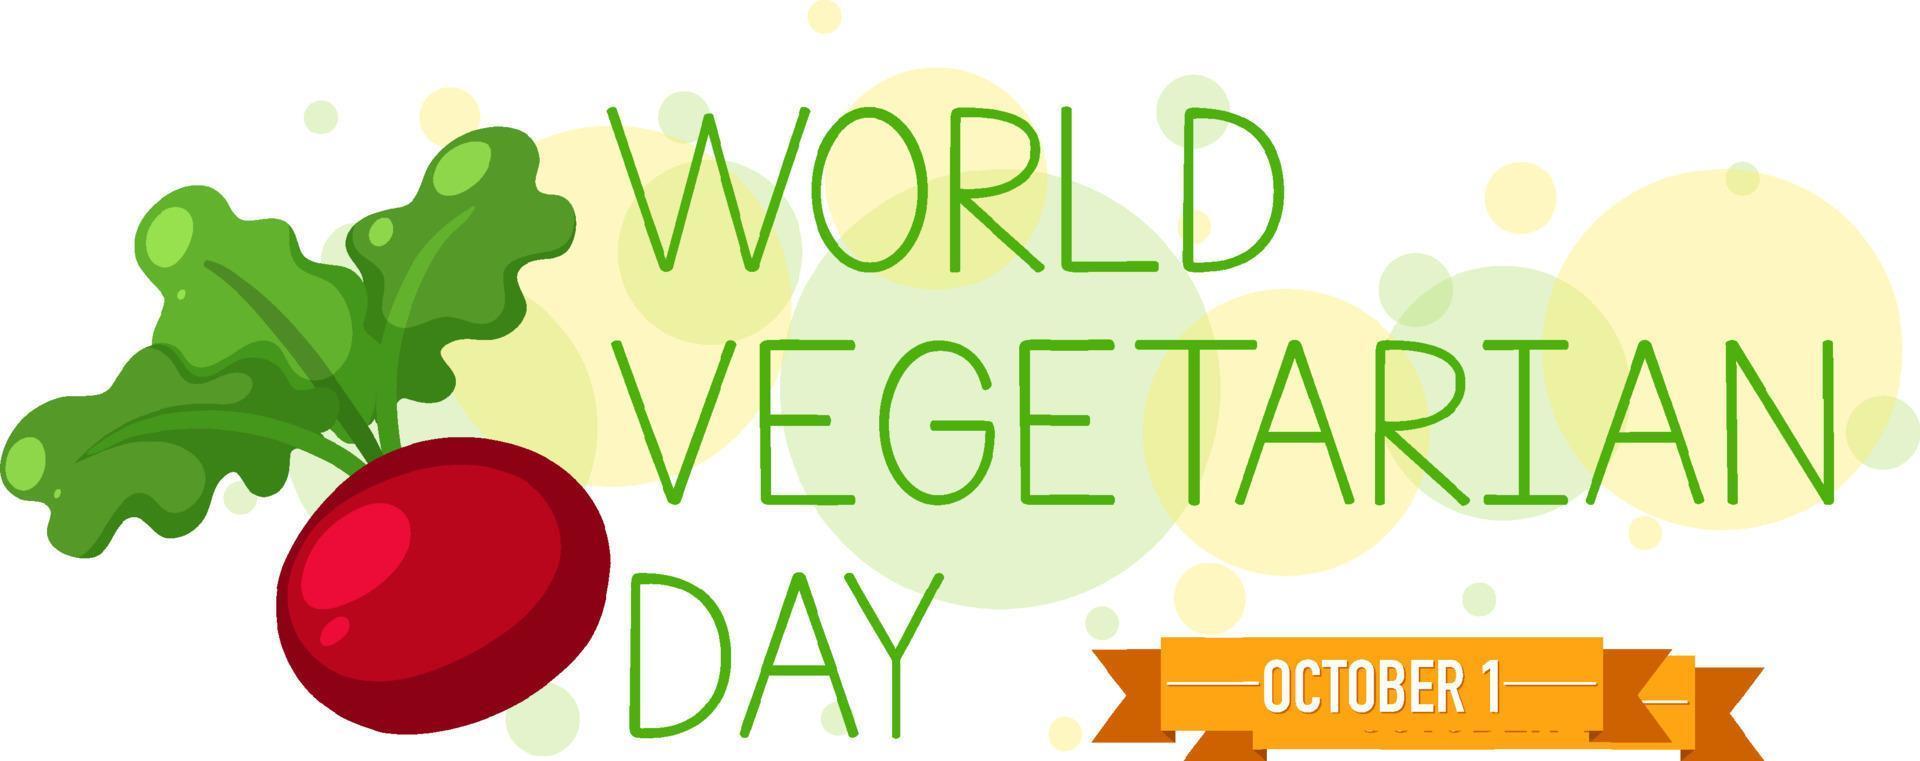 logotipo del día mundial vegetariano con un rábano vector